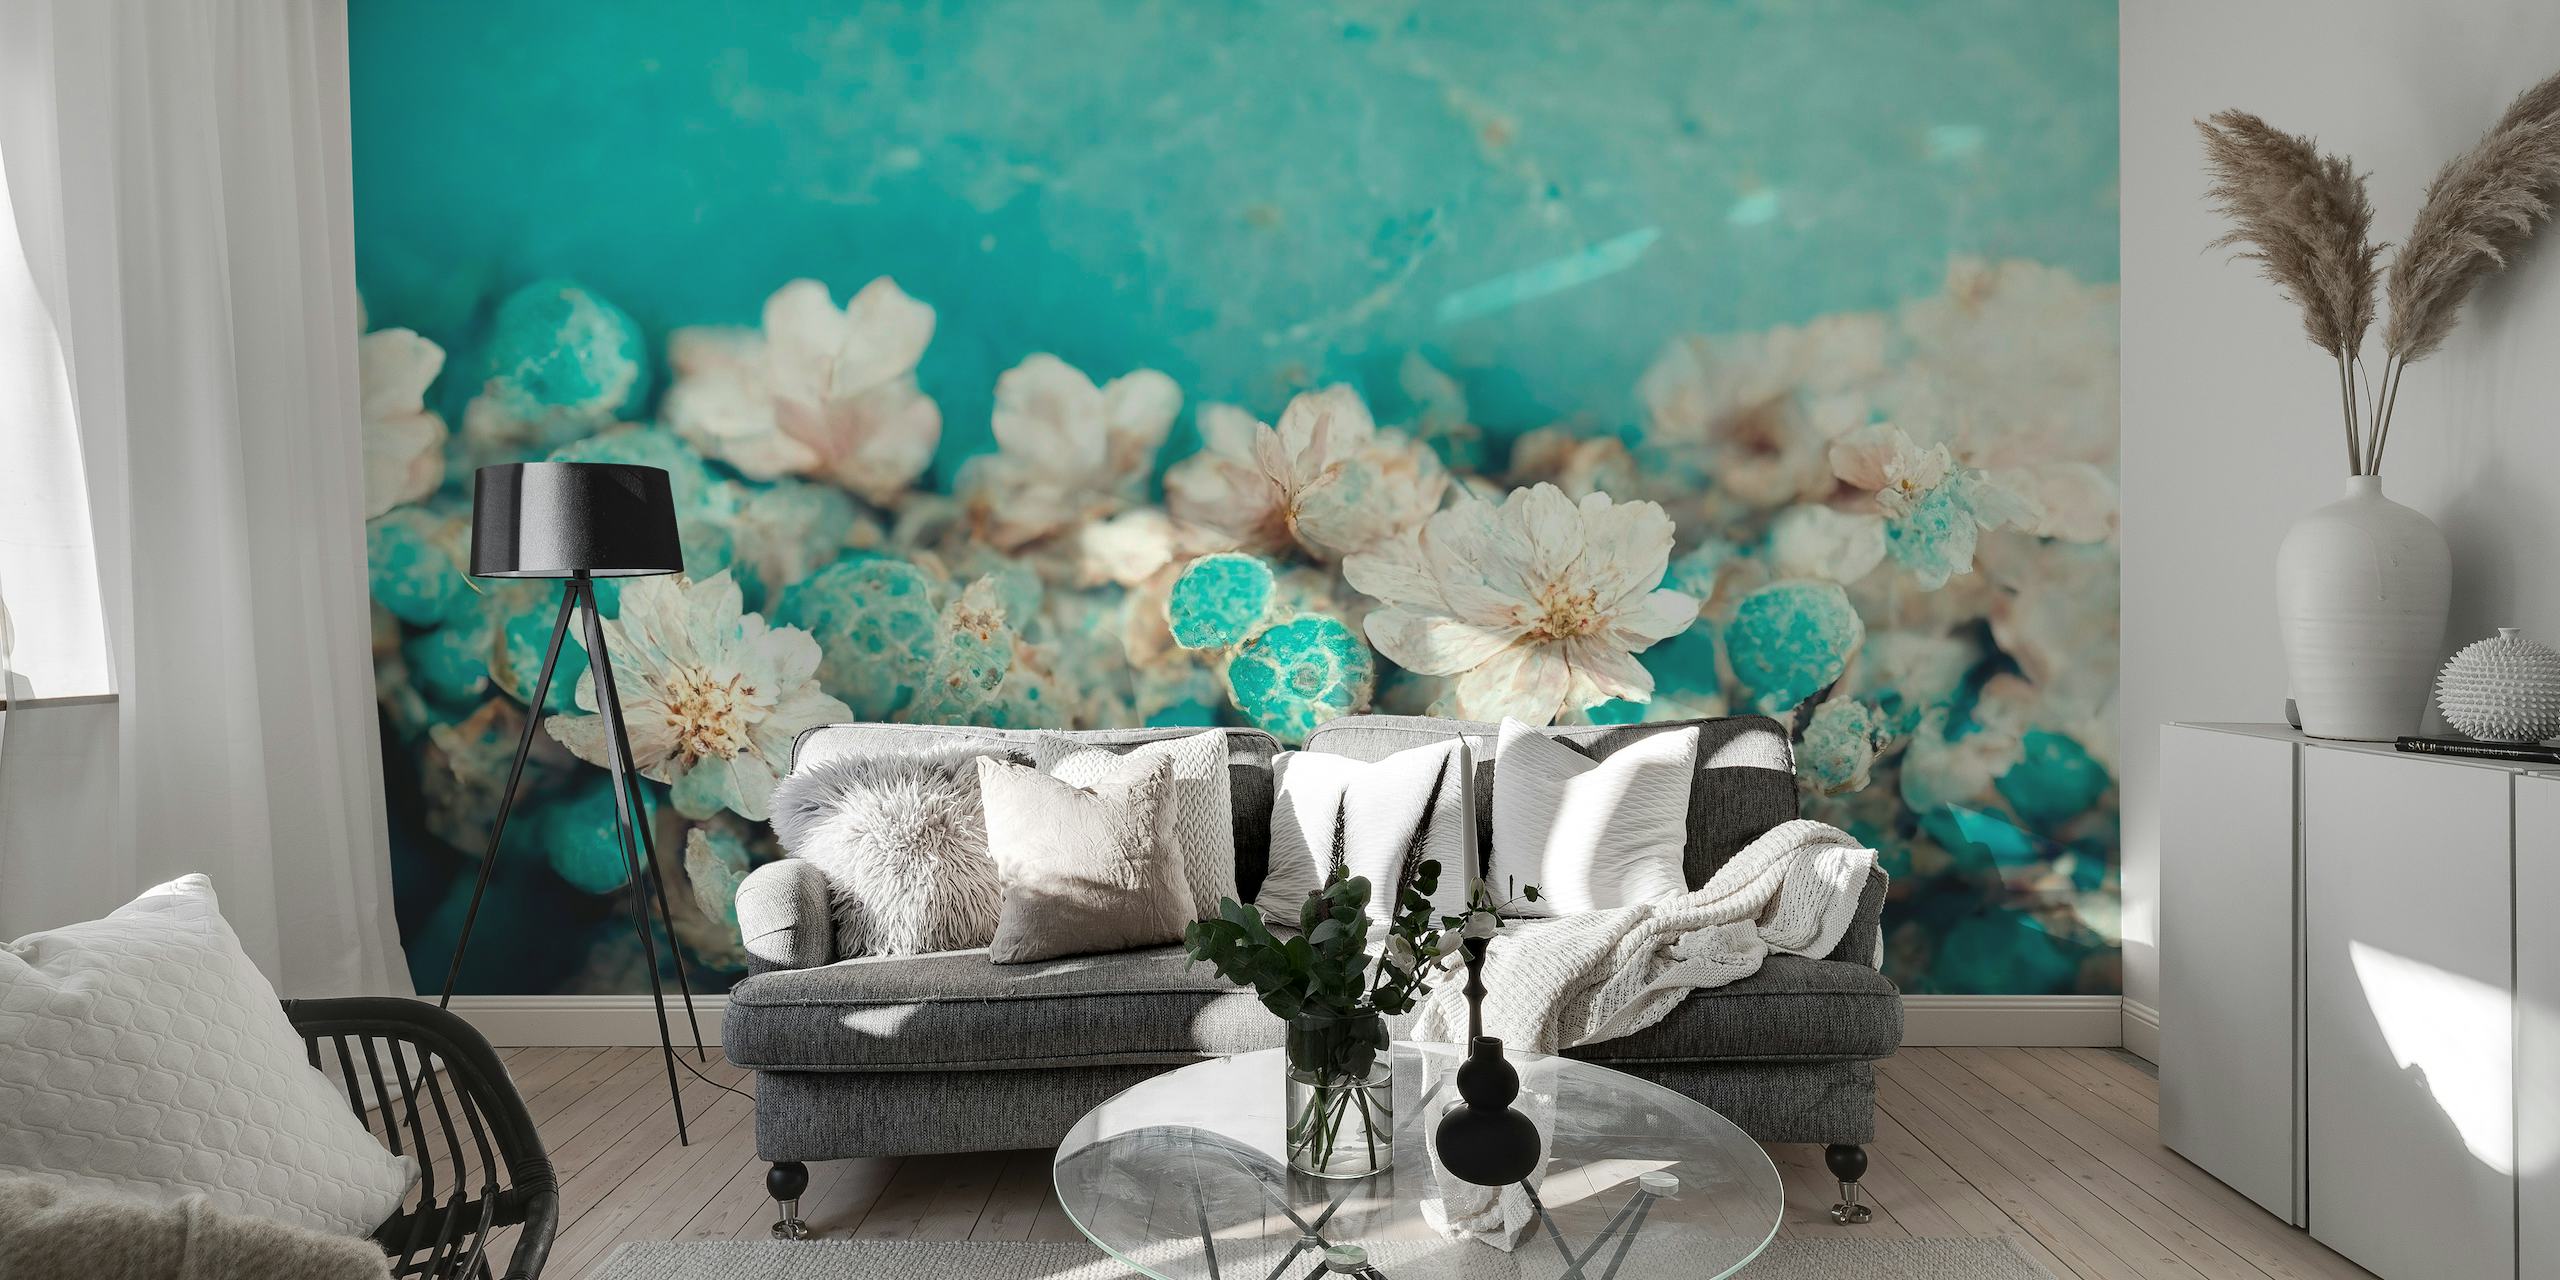 Nærbillede af hvide blomster mod et turkis baggrundsvægmaleri